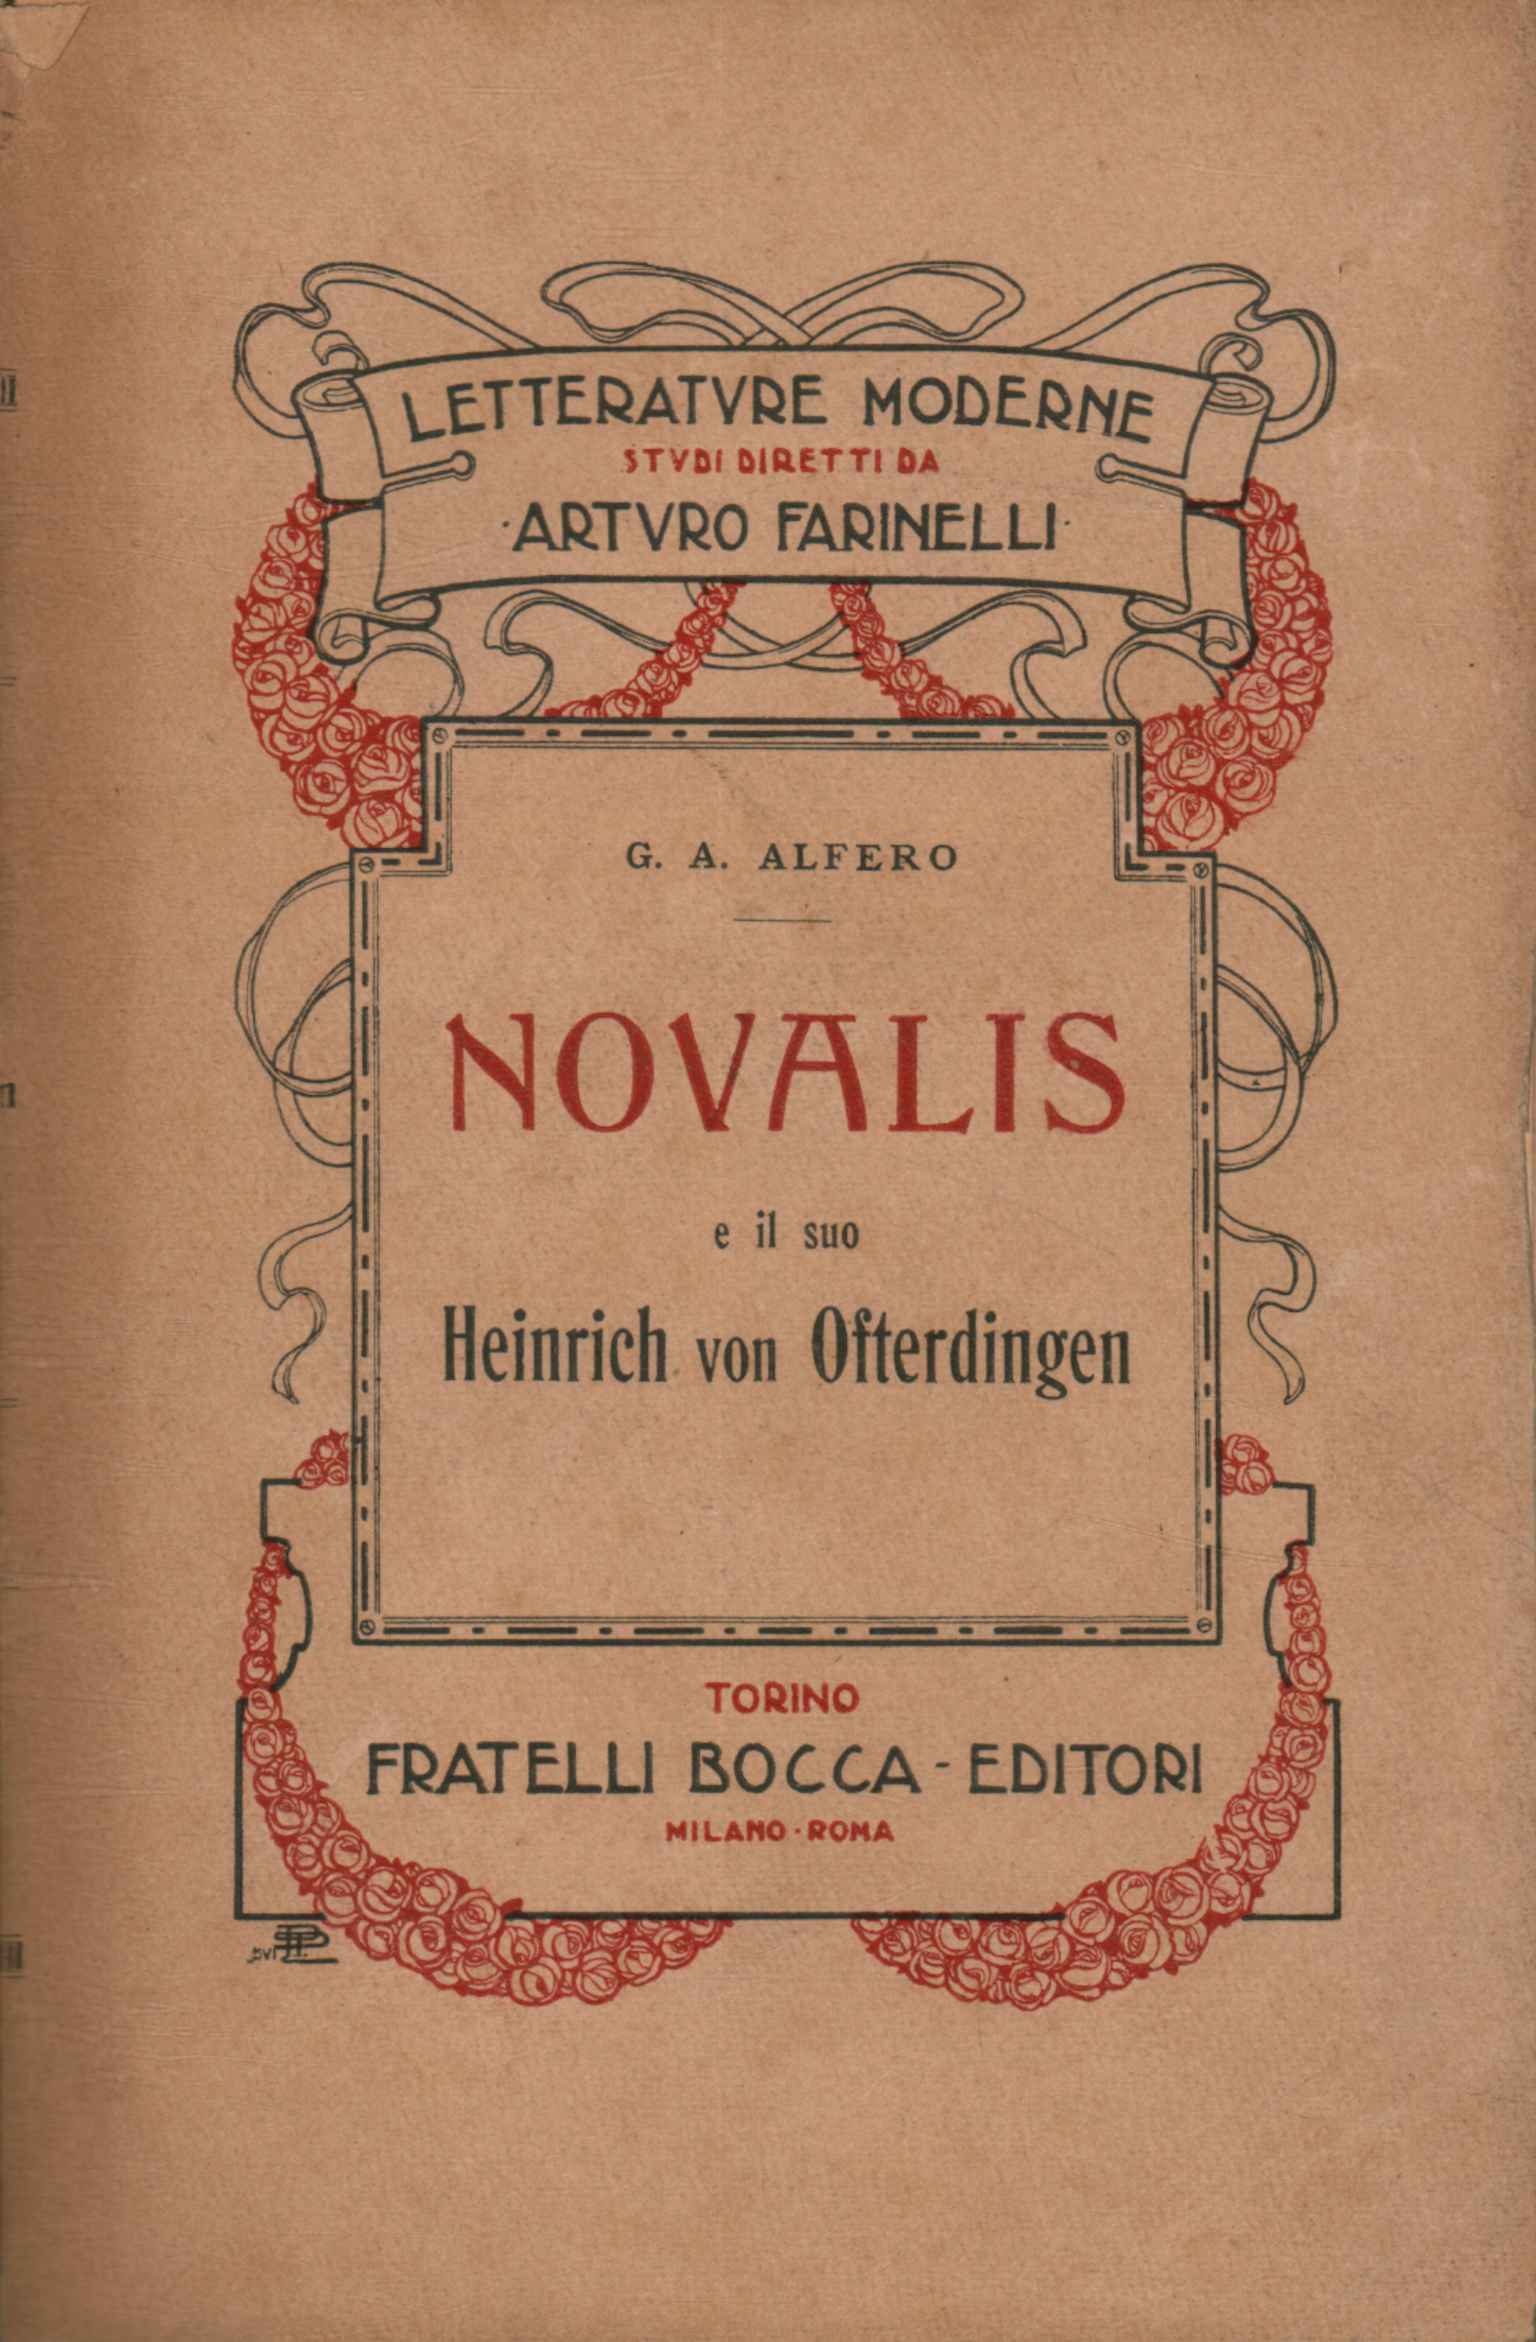 Novalis and his Heinrich von Ofterdin